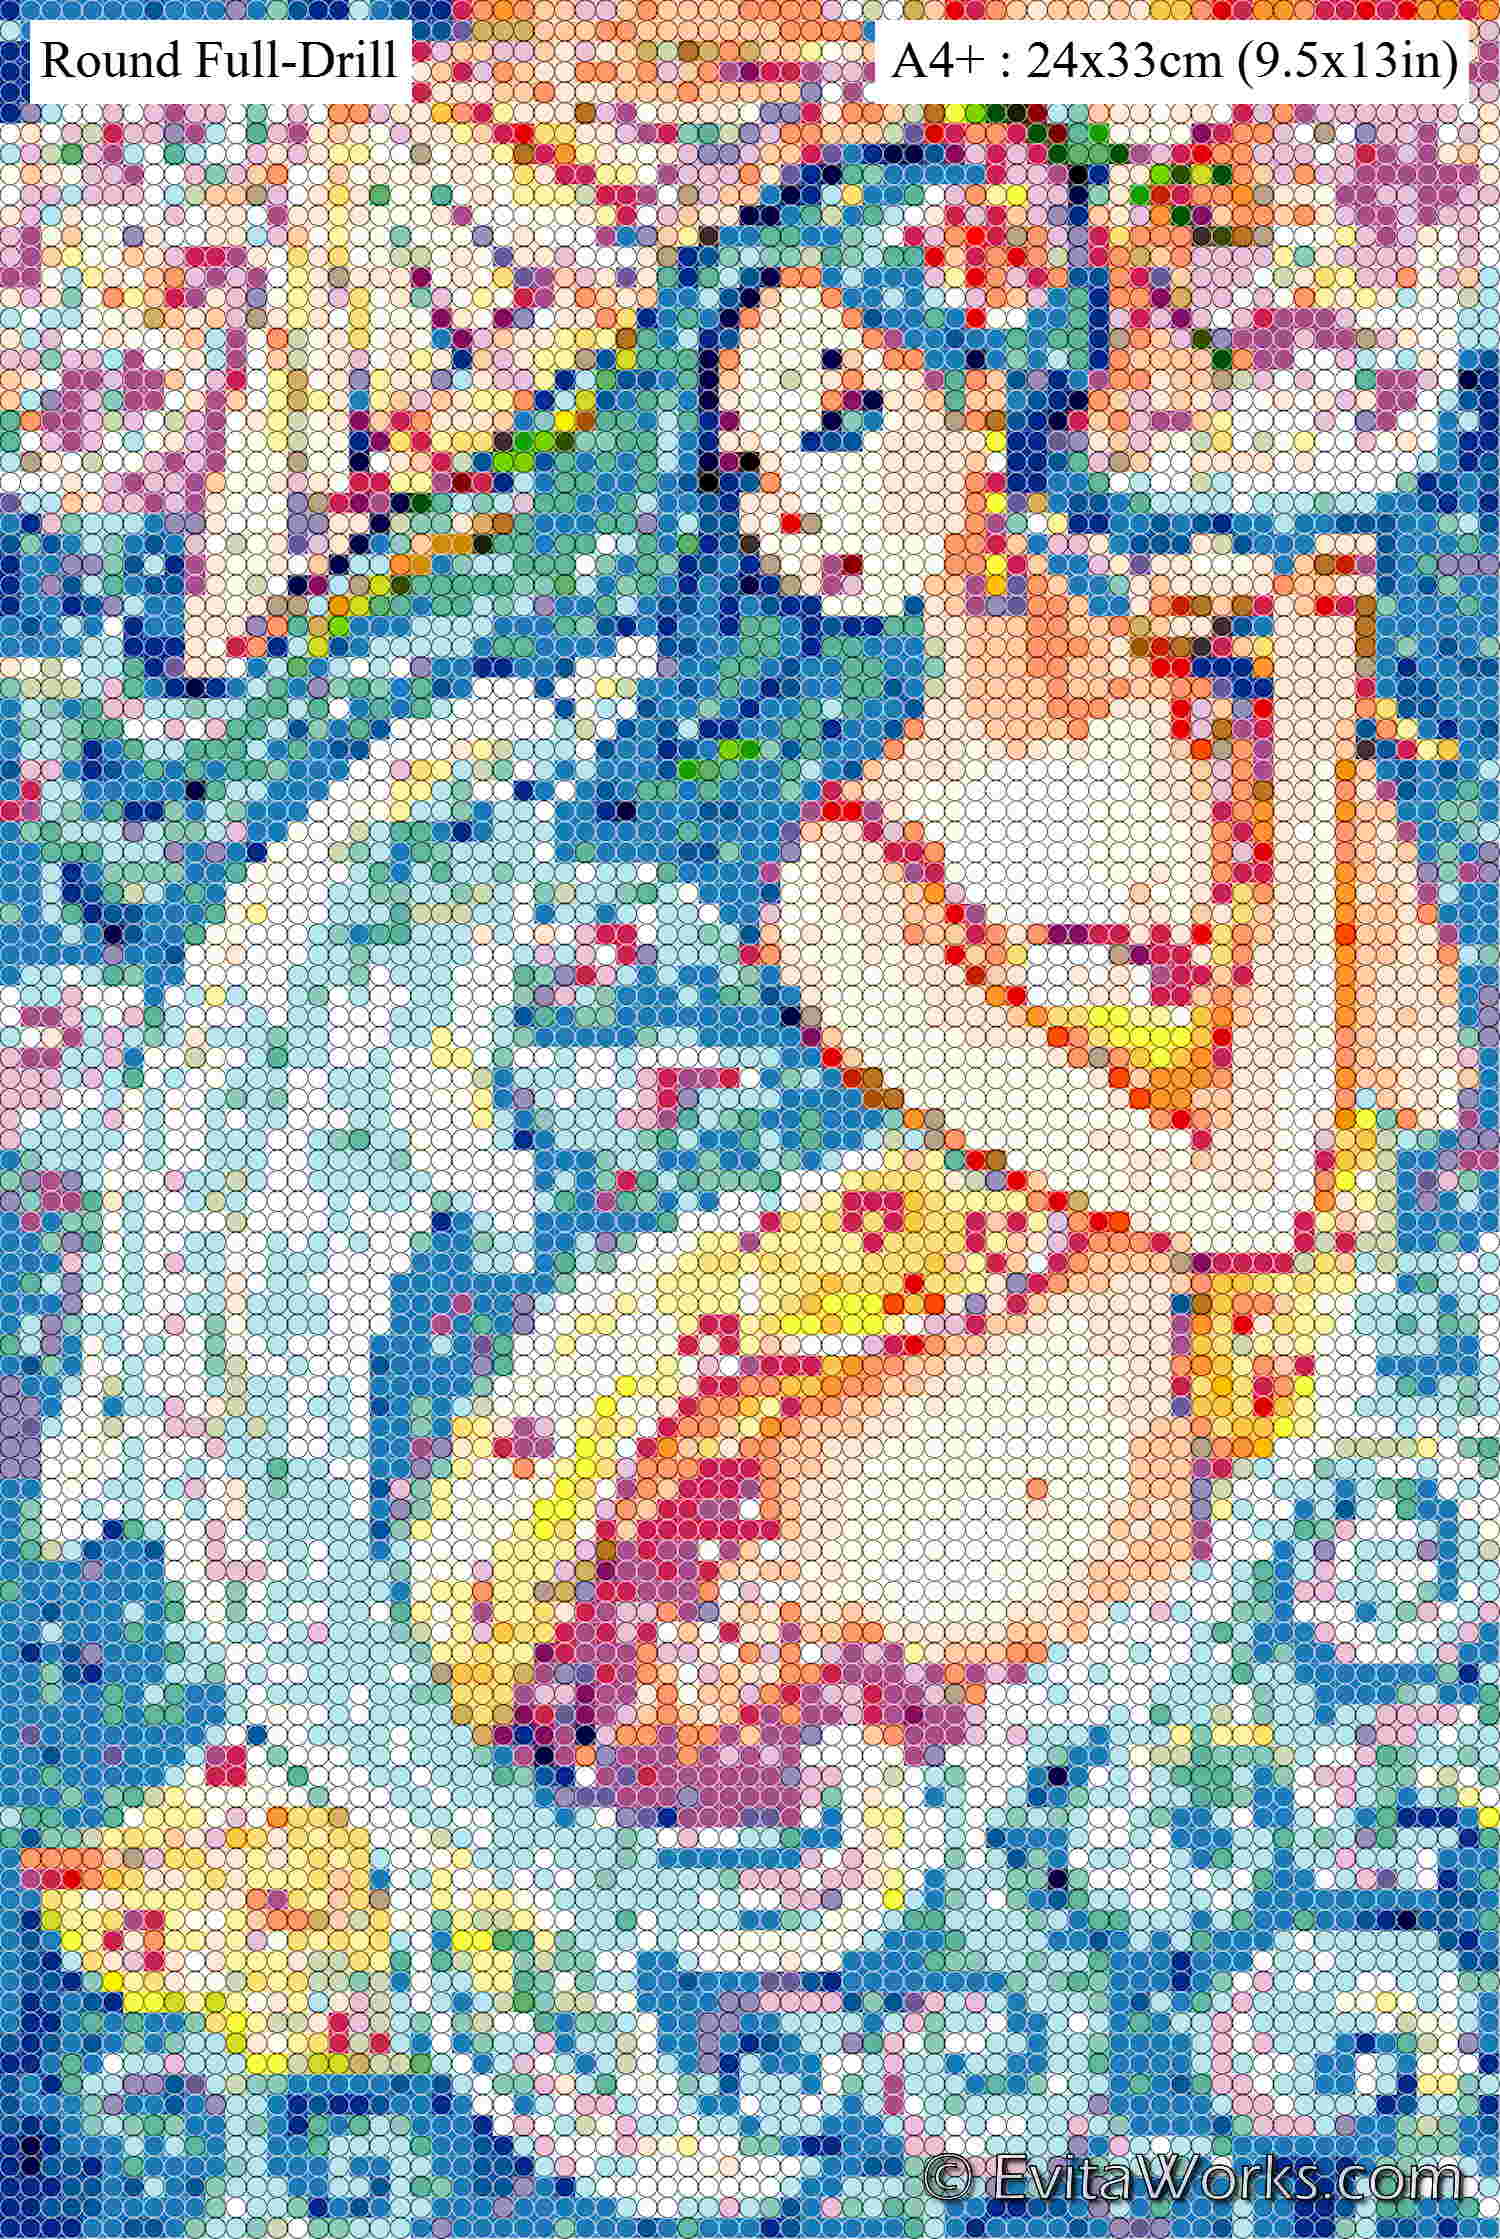 oa mermaid 20 a4rfd ~ EvitaWorks